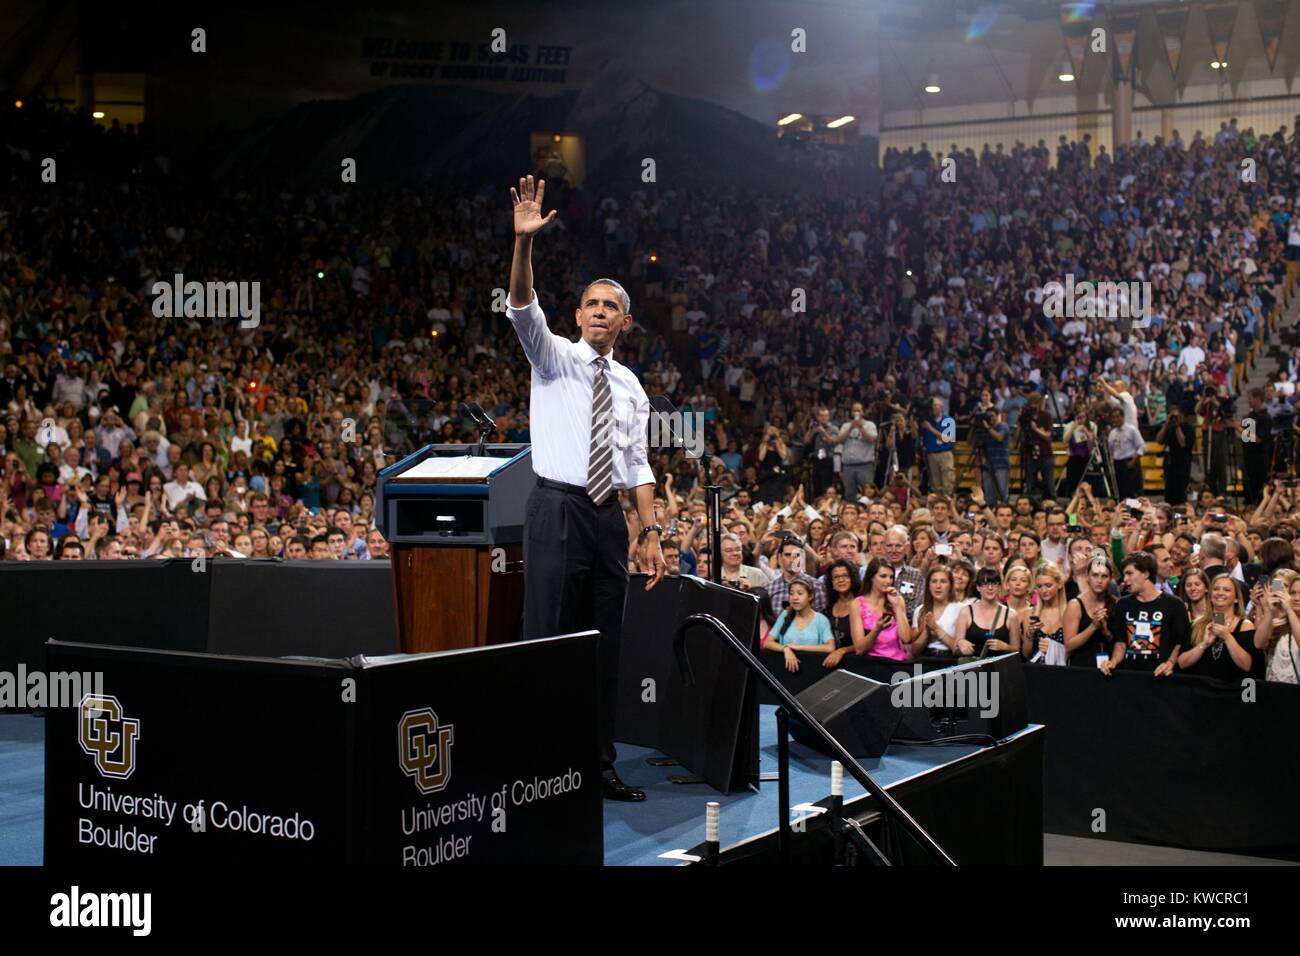 Il presidente Barack Obama riconosce applausi seguendo il suo discorso sul prestito studente tassi d'interesse. Università di Colorado, Boulder, 24 aprile 2012. (BSLOC 2015 3 17) Foto Stock